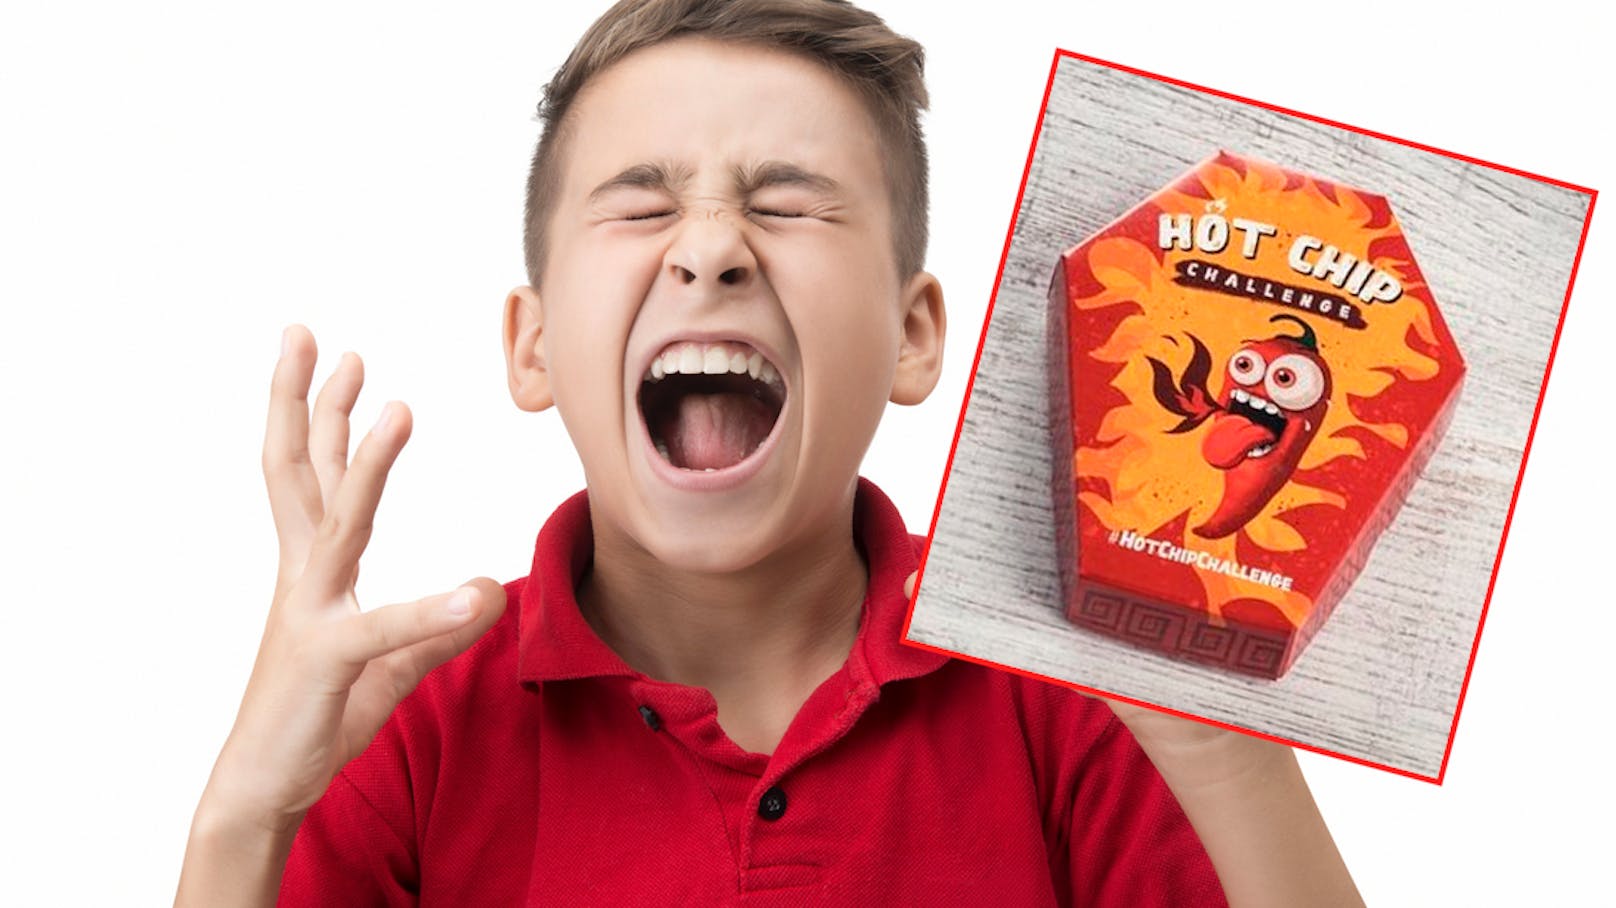 Gefährlich! "Hot Chip Challenge" in Österreich verboten